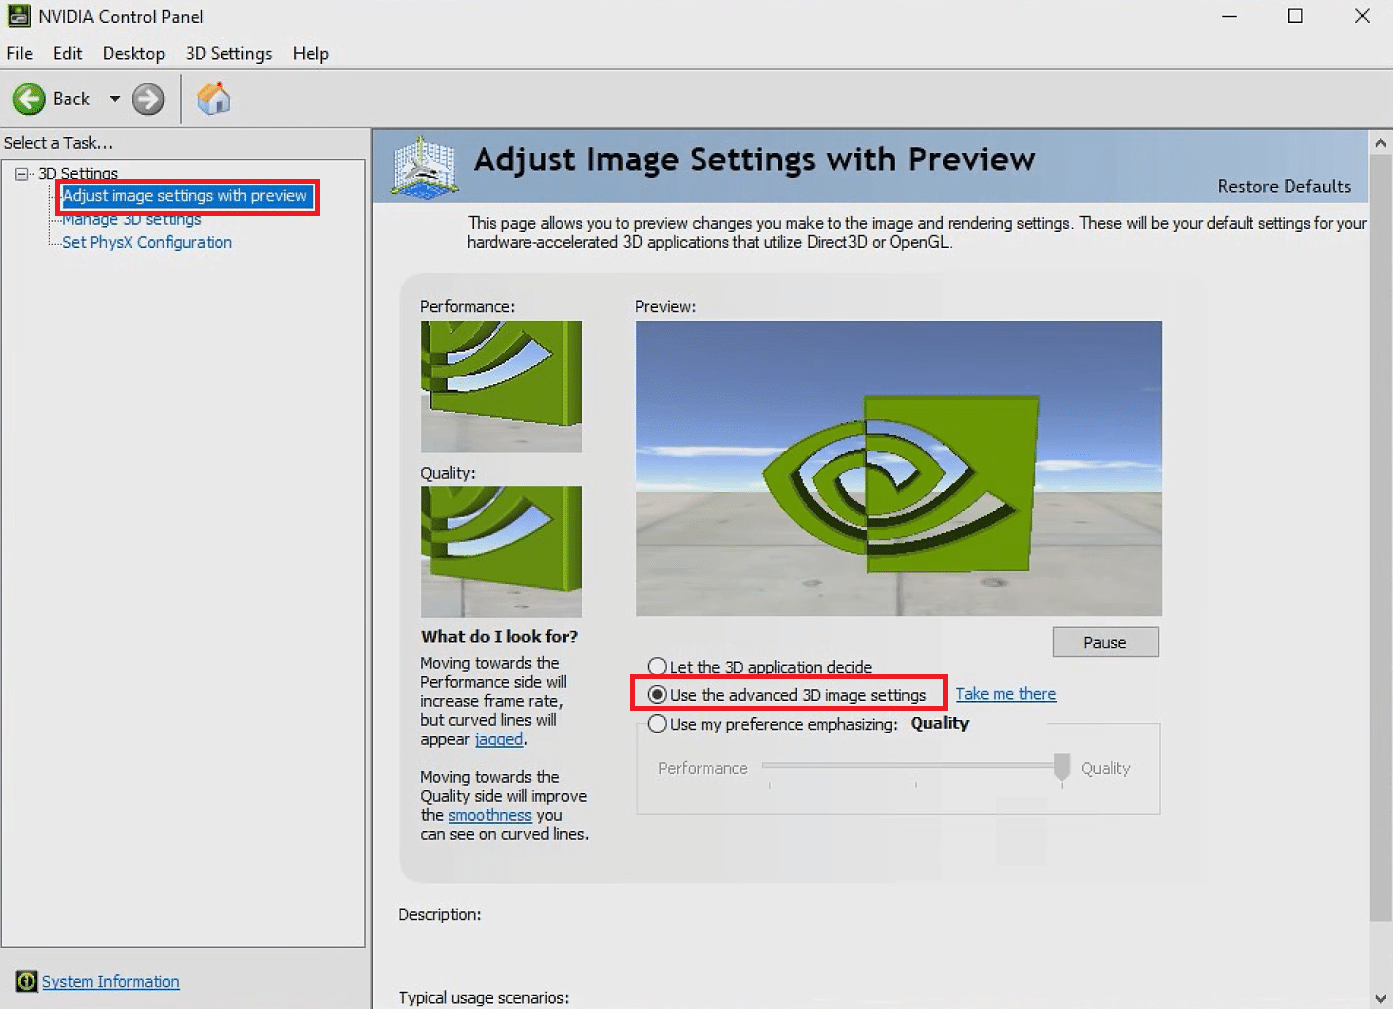 Убедитесь, что в разделе «Настроить параметры изображения с предварительным просмотром» выбран параметр «Использовать дополнительные настройки 3D-изображения».